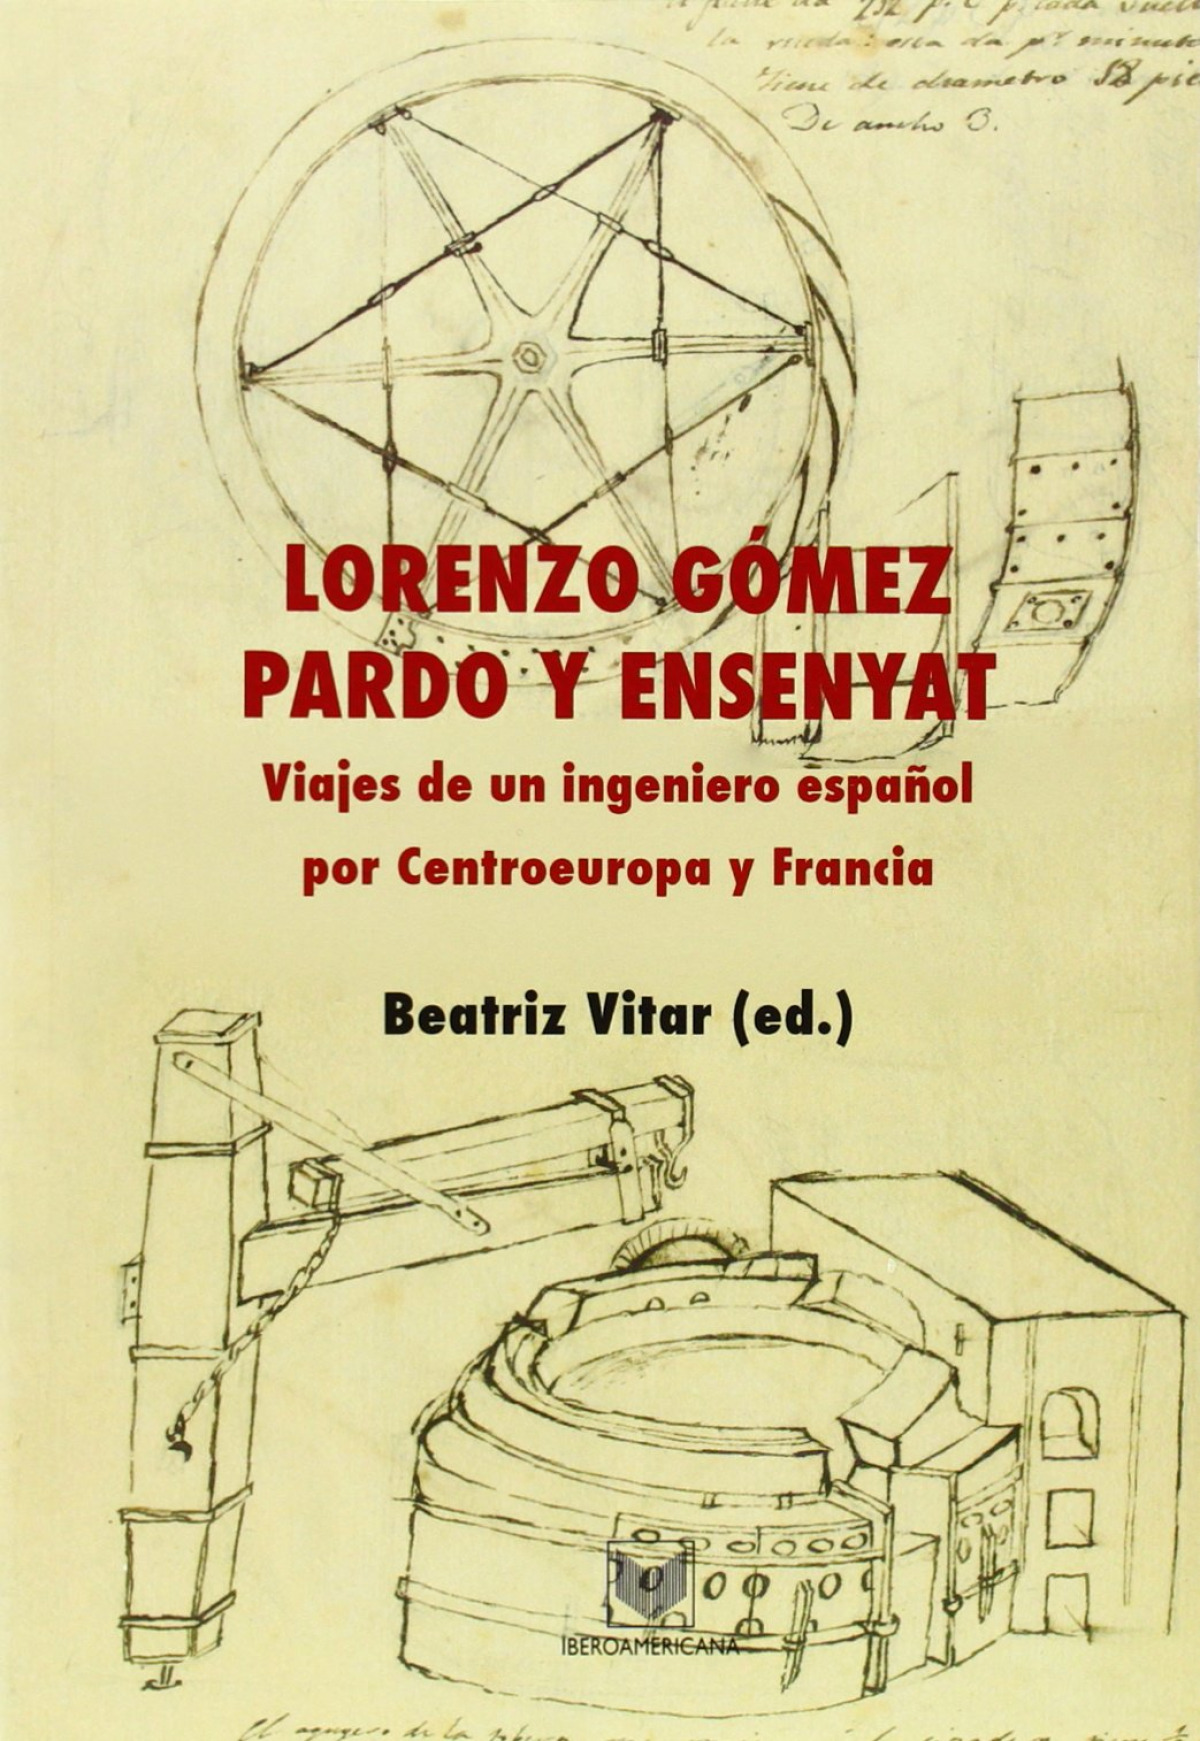 Viaje de ingeniero español por Centroeuropa y Francia - Gomez Pardo Y Ensenyat, Lorenzo